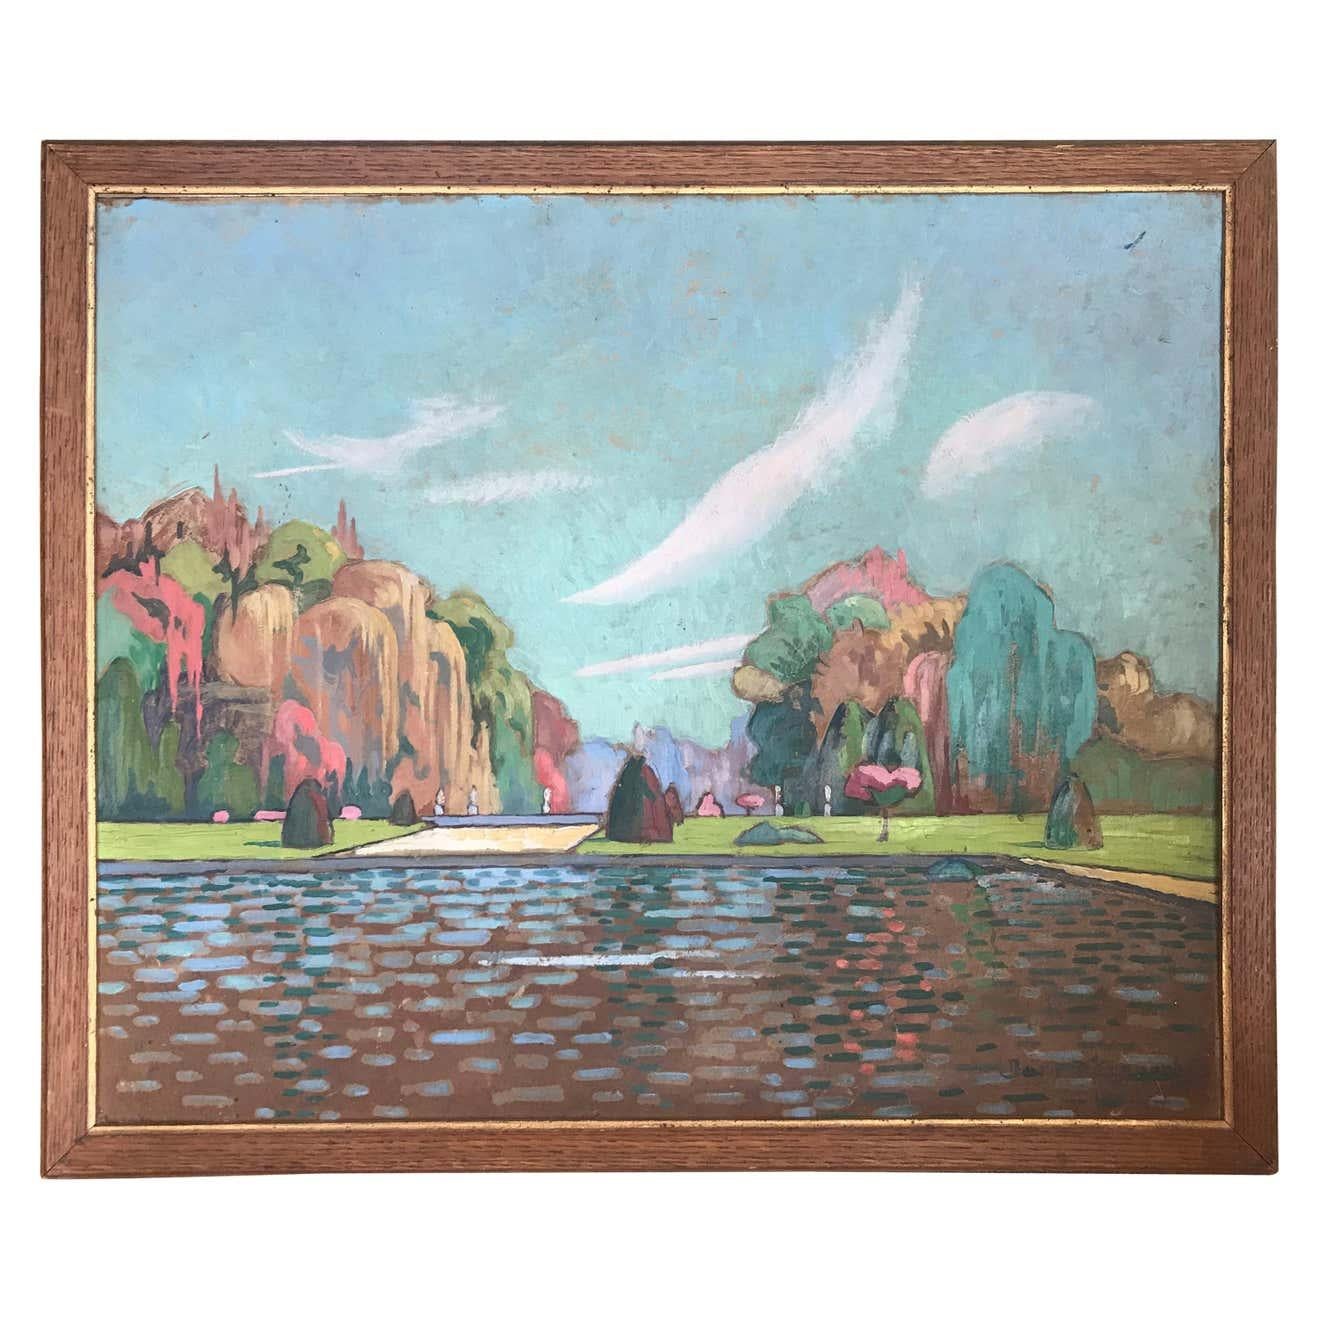 Jean d'ESPARBÈS Landscape Painting - View of the Fontainebleau Castle Park by Jean D'esparbes, 1922